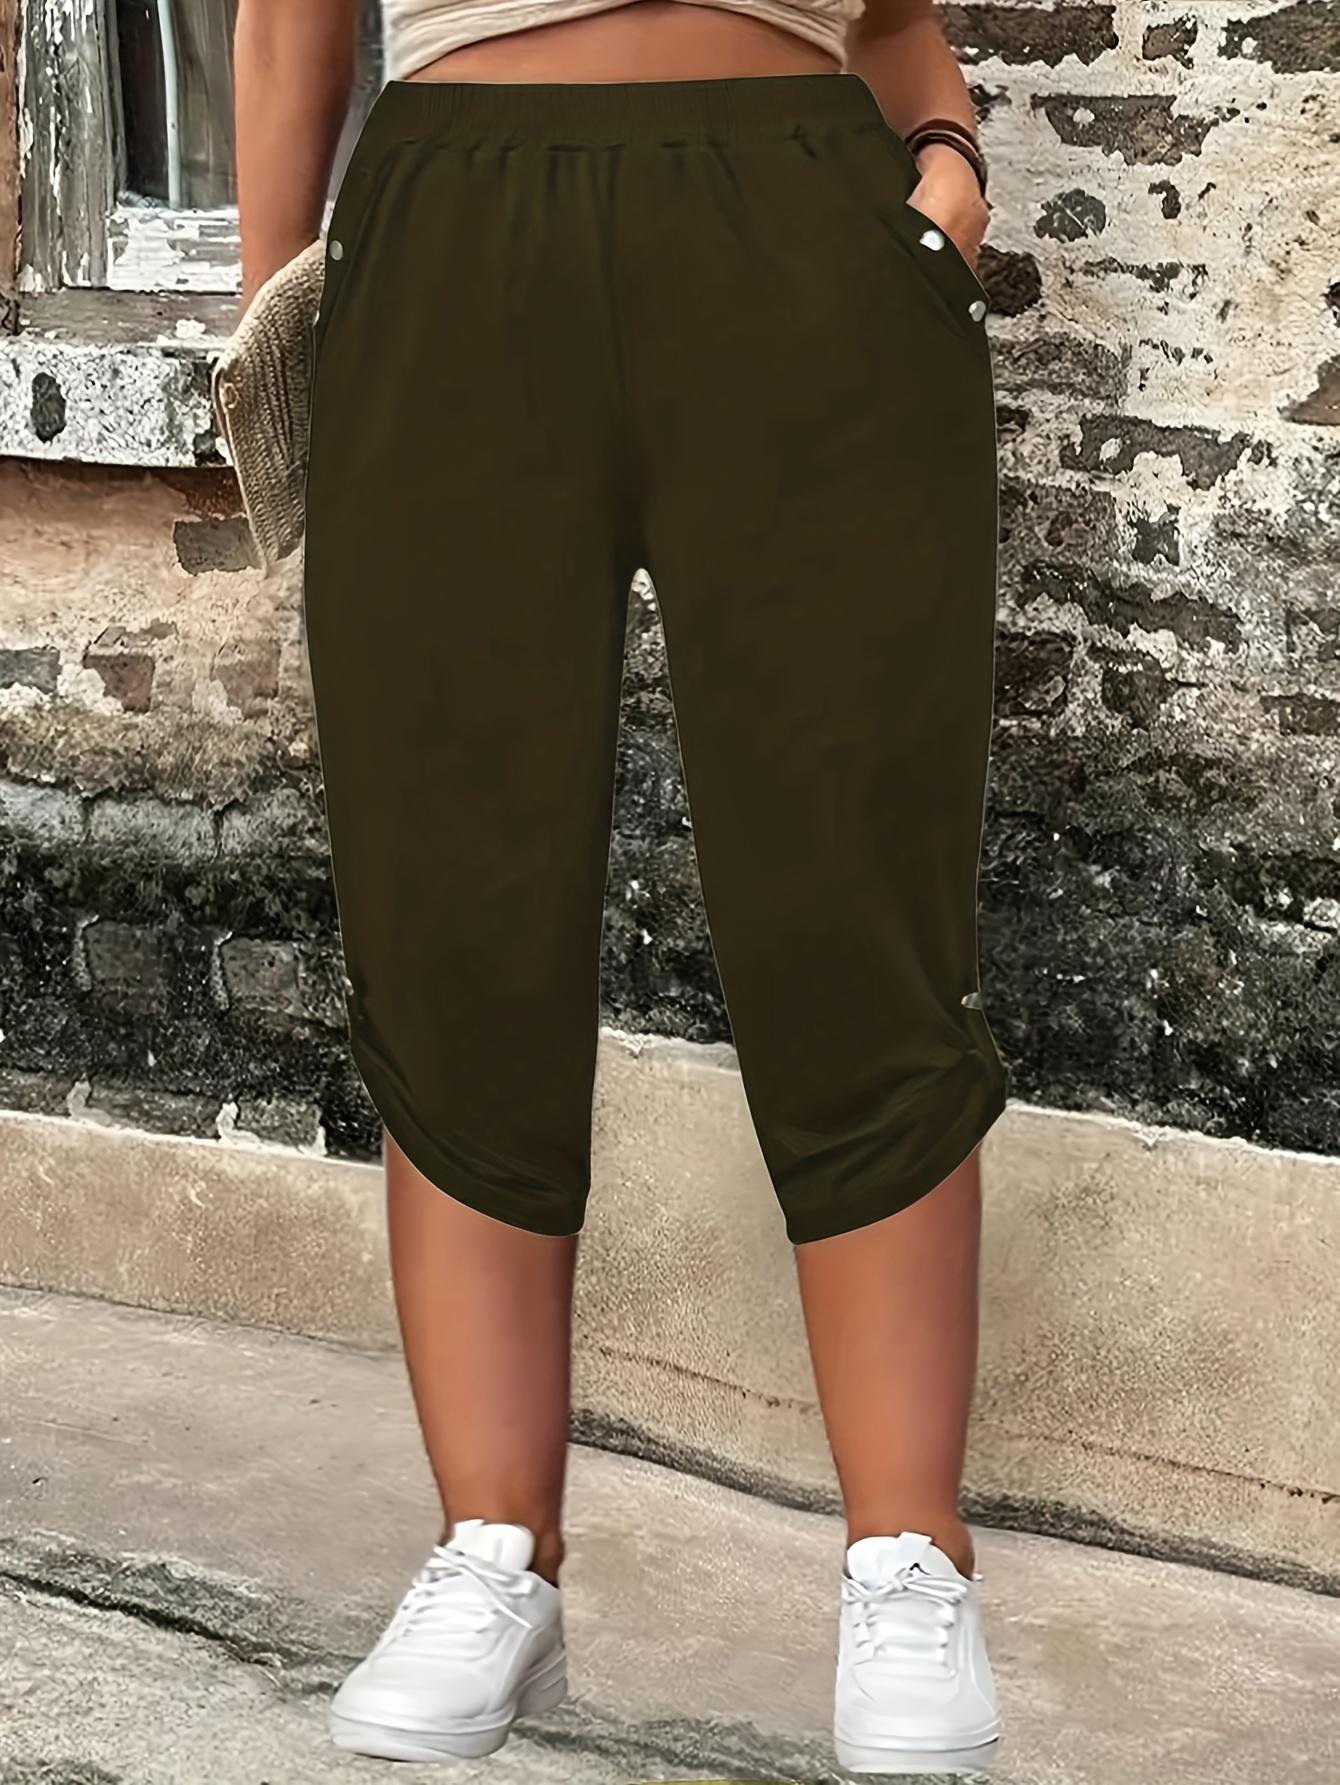 Capri Pants For Women - Temu